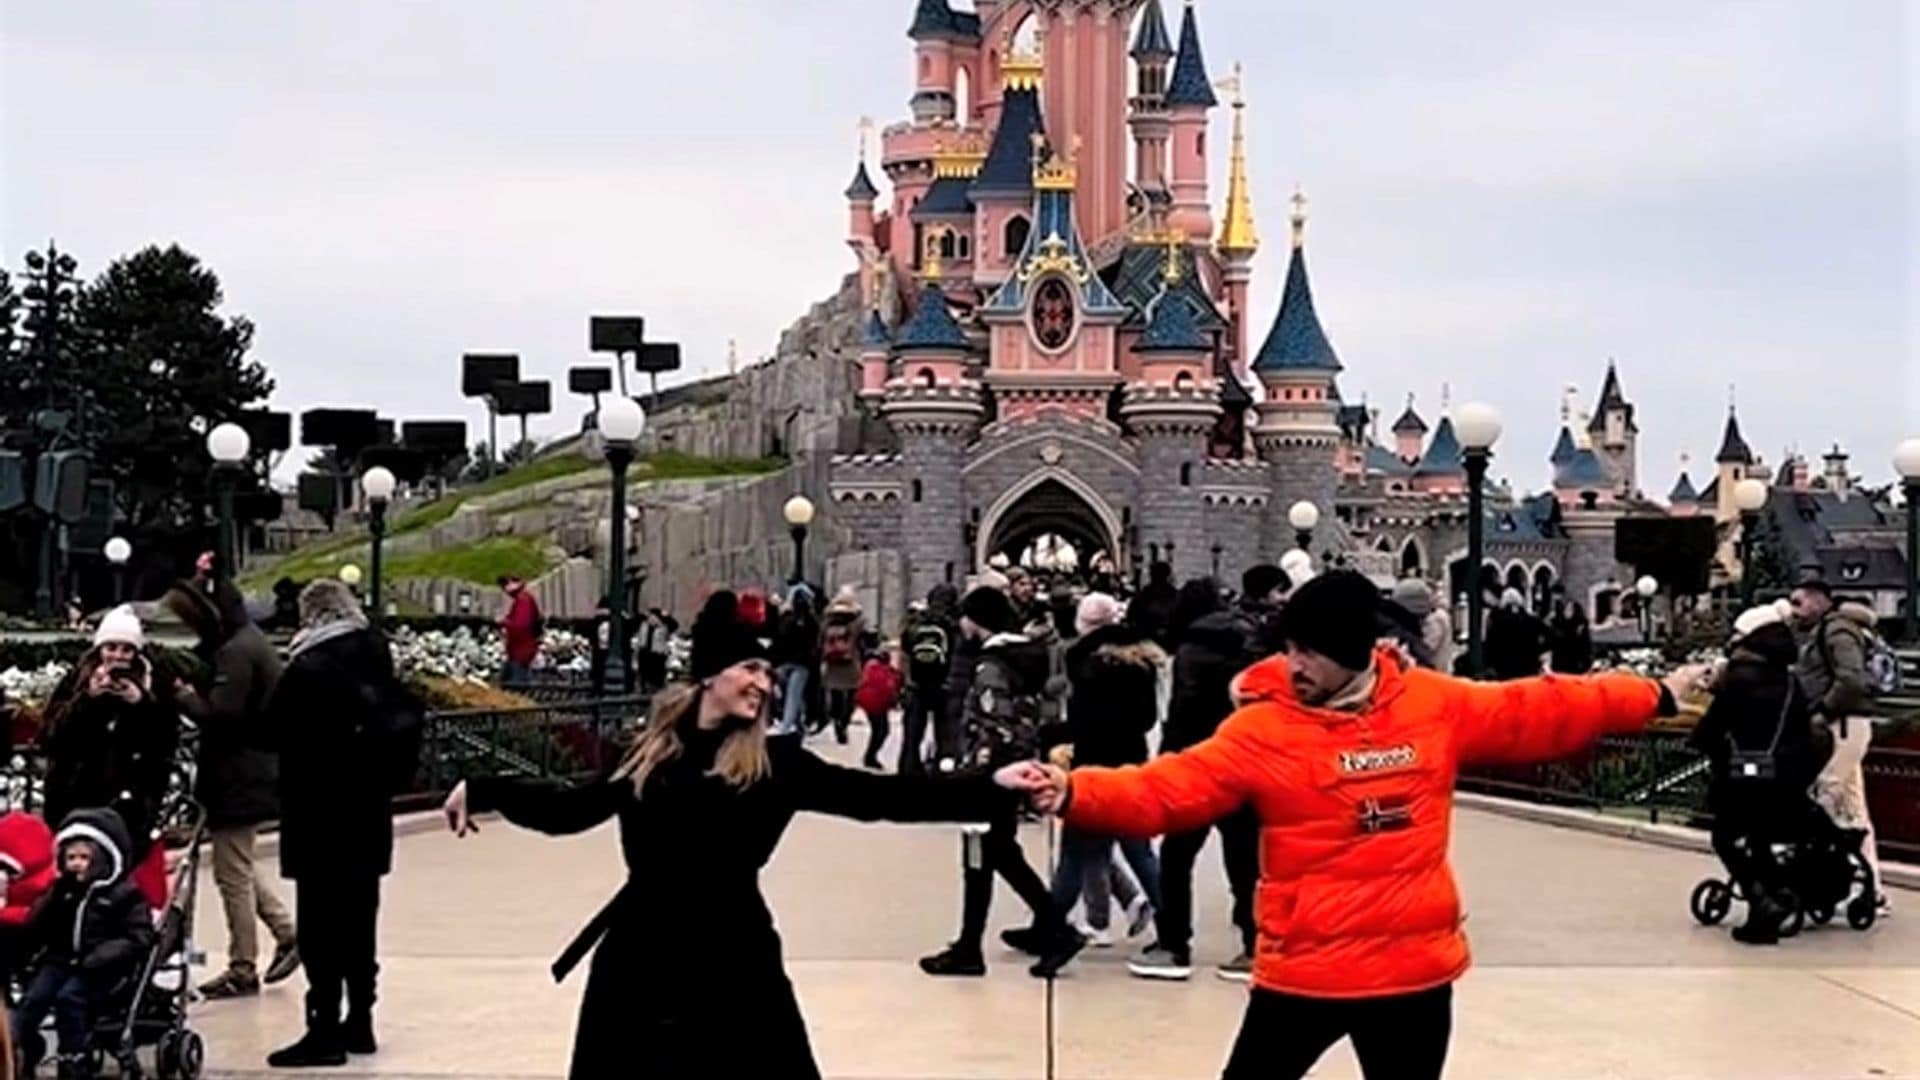 David Bustamante y Yana Olina derrochan amor en una romántica escapada a Disneyland París